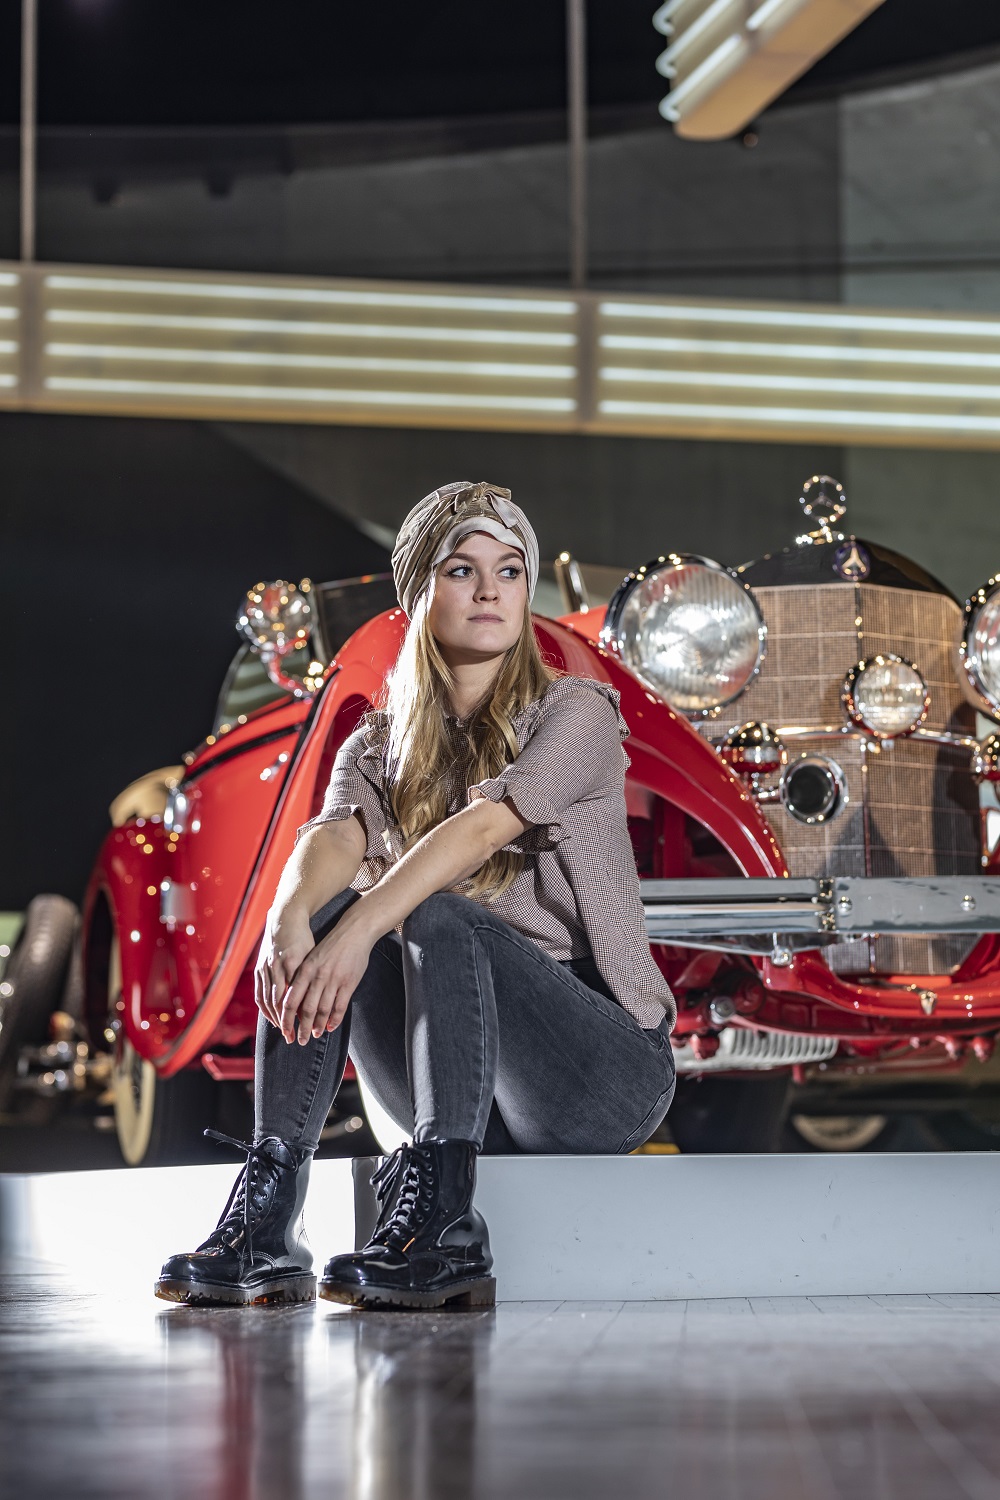 Muzeum Mercedes-Benz ożywia motoryzacyjną historię inspirowaną także...kobietą